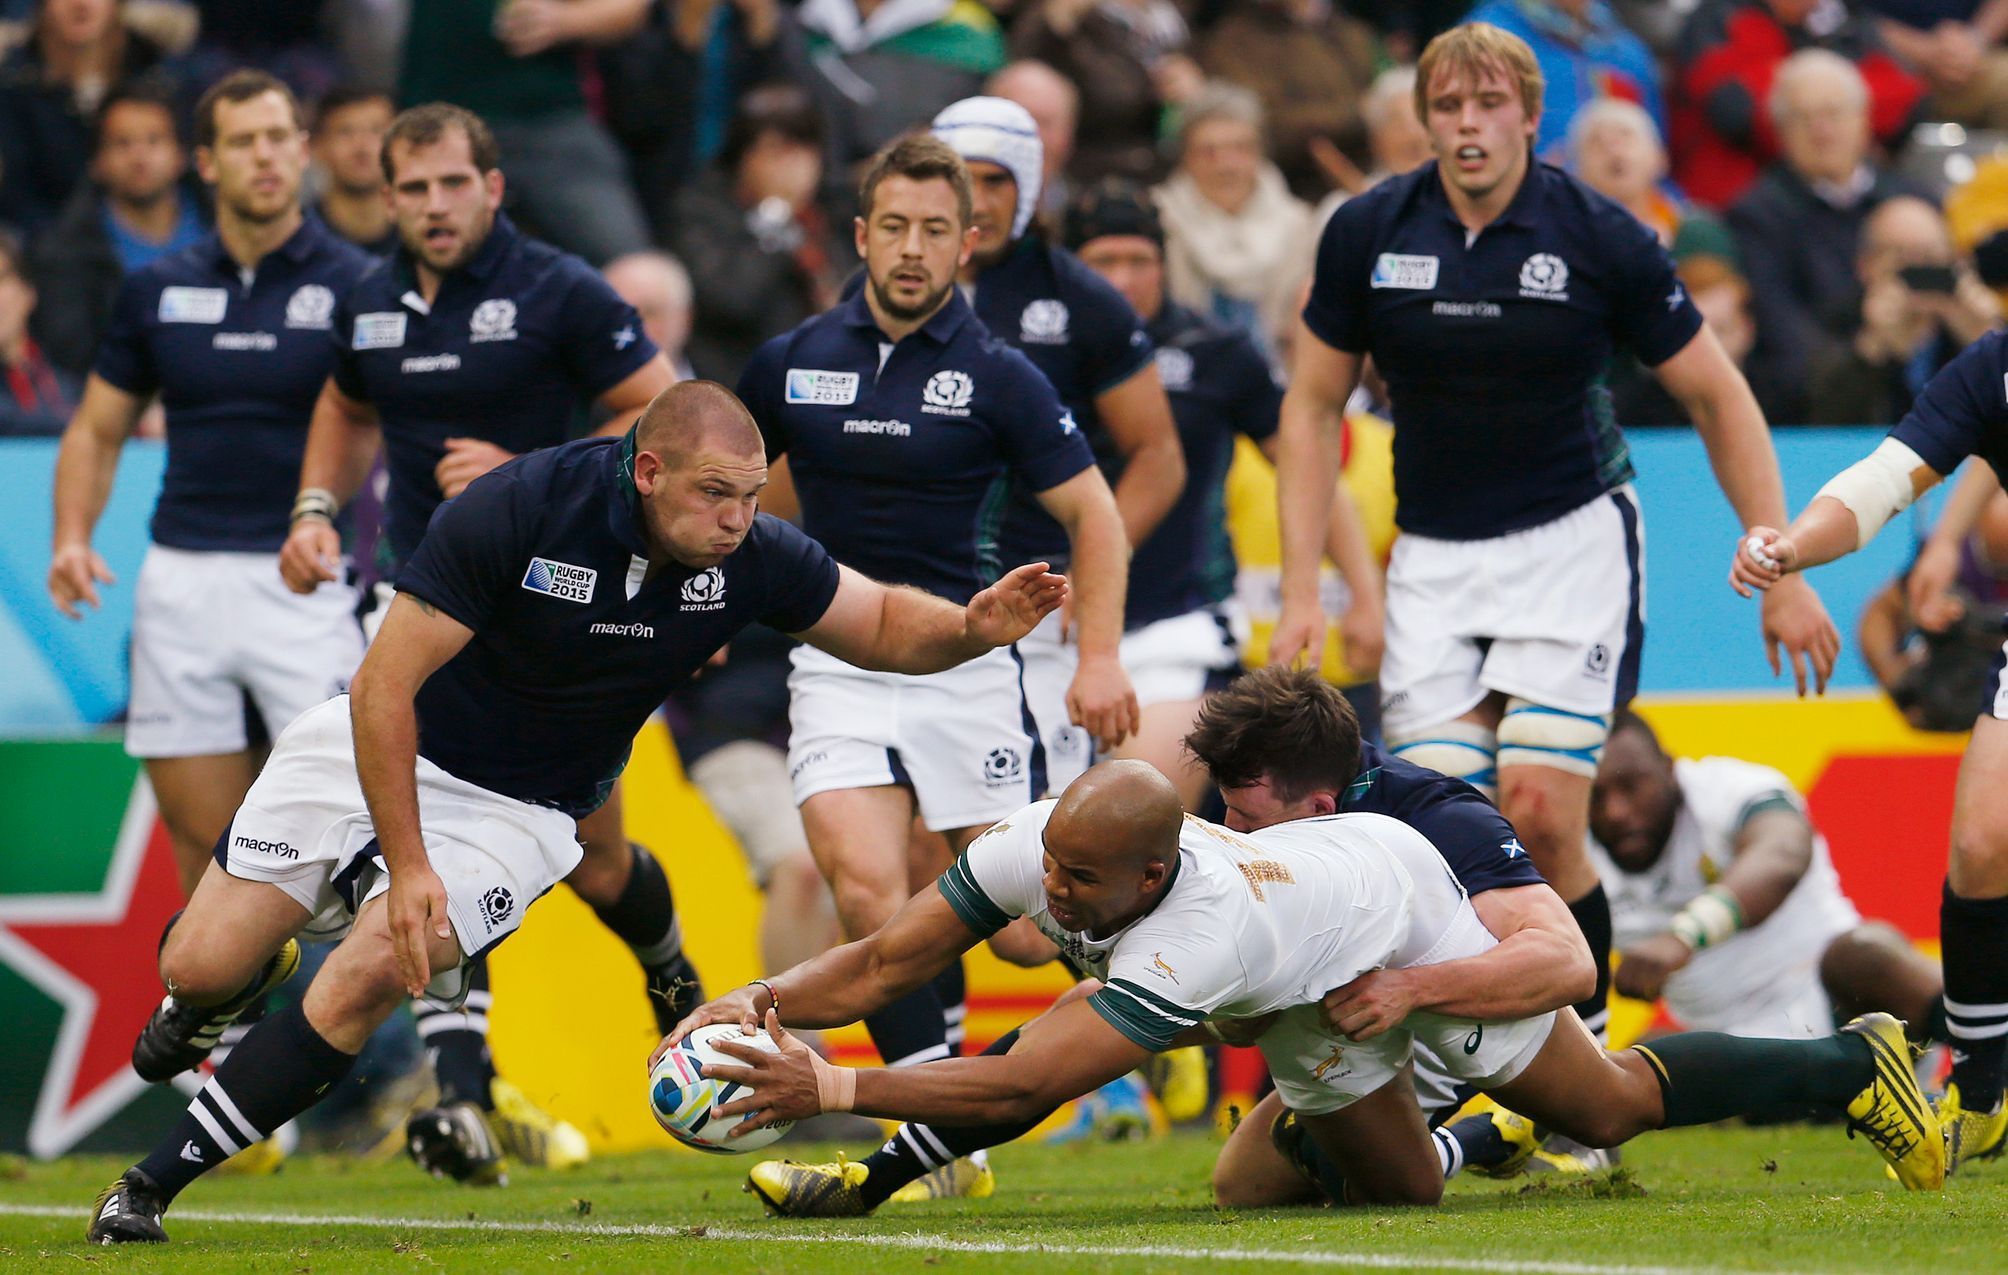 Jihoafrická republika proti Skotsku na MS v rugby 2015 (JP Pietersen pokládá druhou Jihoafrickou pětku v zápase)